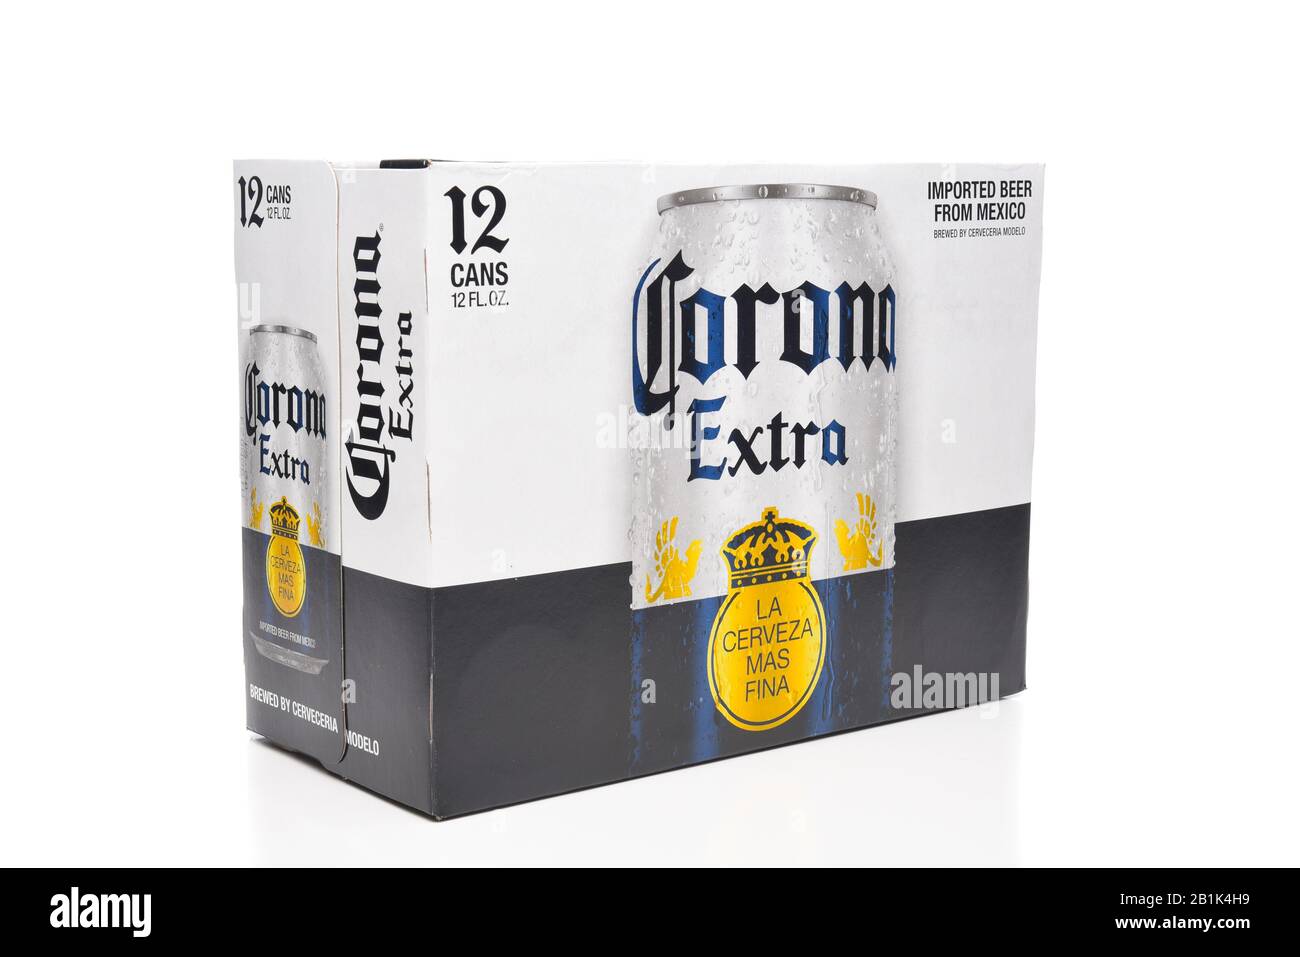 Irvine, CALIFORNIA - 21 DE MARZO de 2018: Paquete de 12 latas de cerveza Corona Extra. Corona es la cerveza importada más popular en los Estados Unidos. Foto de stock